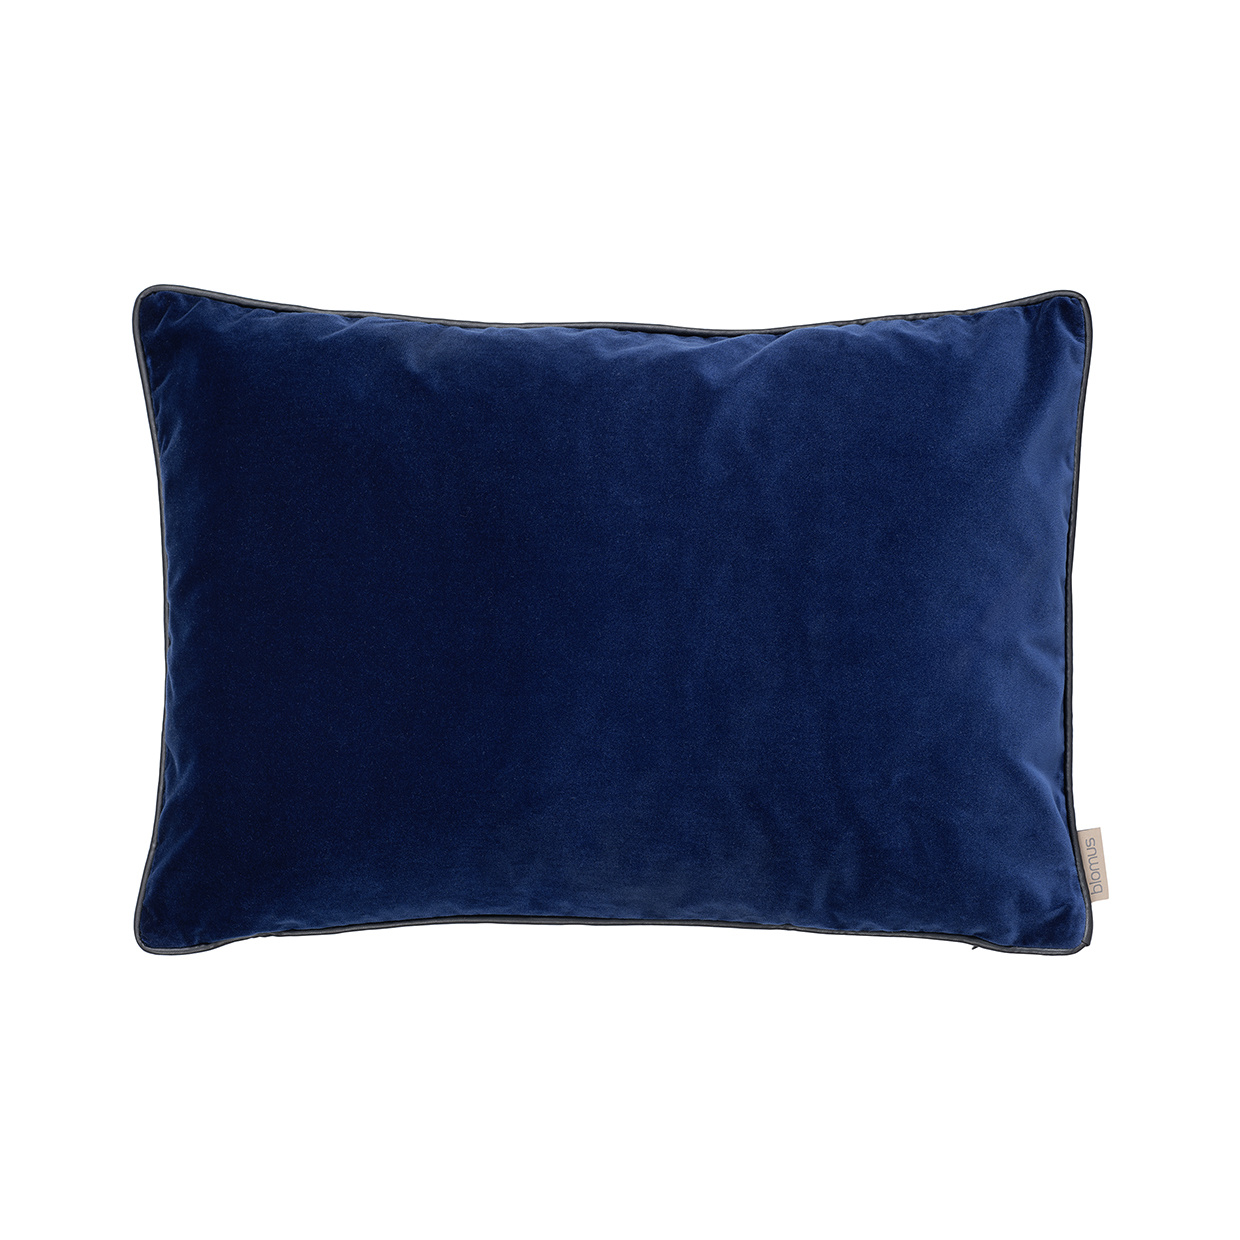 Blomus Fodera per cuscino in VELLUTO 40 x 60 cm - colore Blu notte (66574)  - Bath & Living